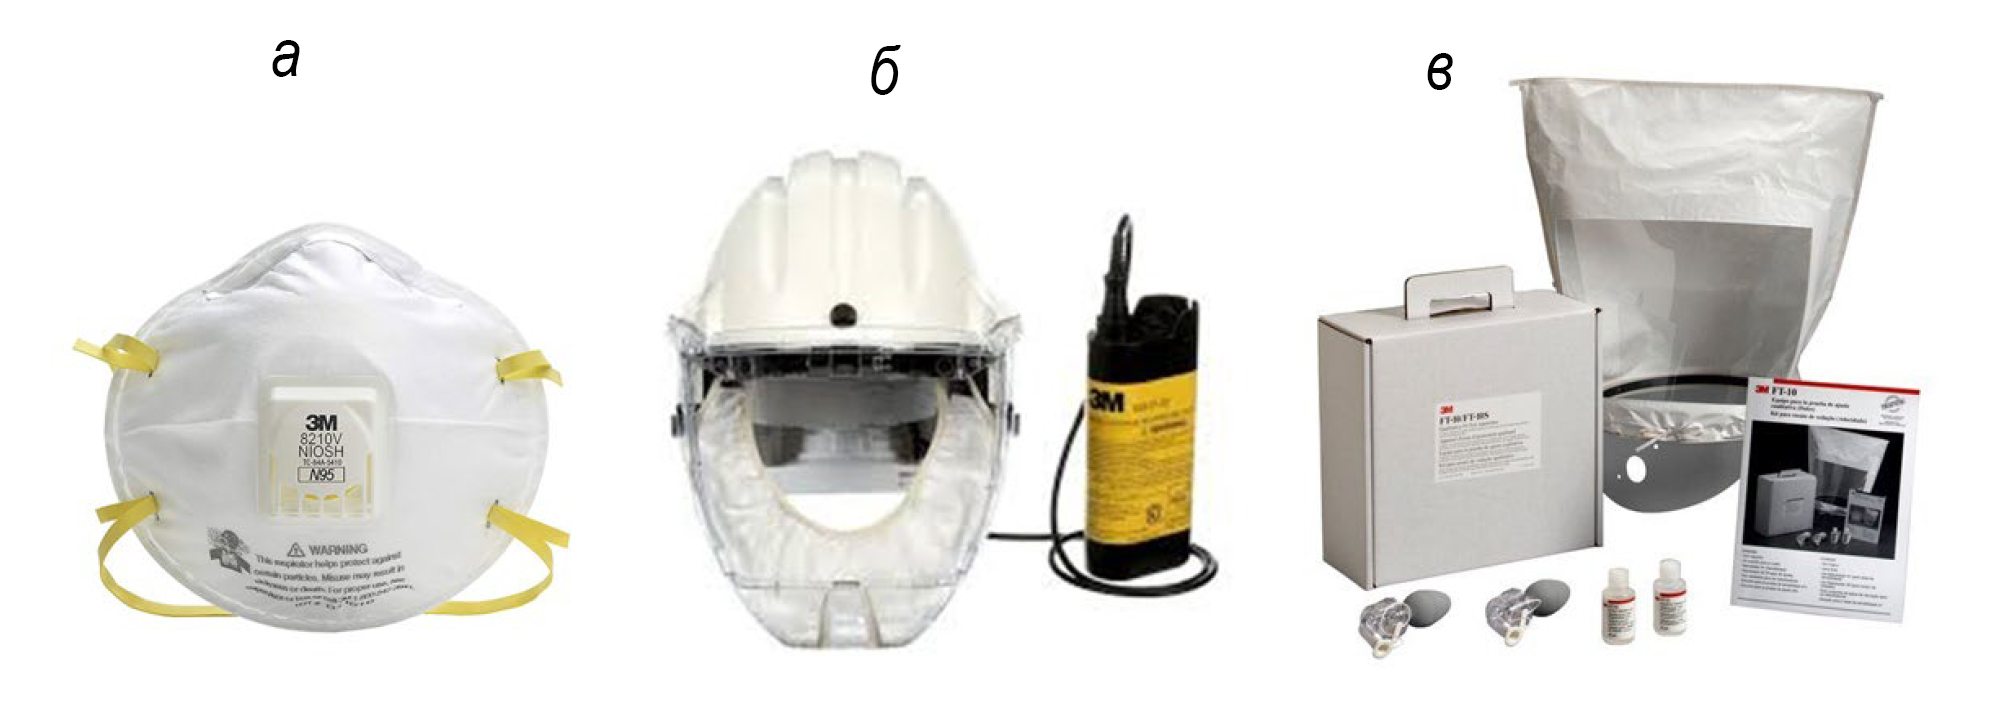  <strong>Рис. 2.</strong> Средства индивидуальной защиты дыхательных путей и способы тестирования их адекватного применения: <em>а</em> – респиратор; <em>б</em> – шлем-респиратор; <em>в</em> – набор для тестирования прилегания респиратора